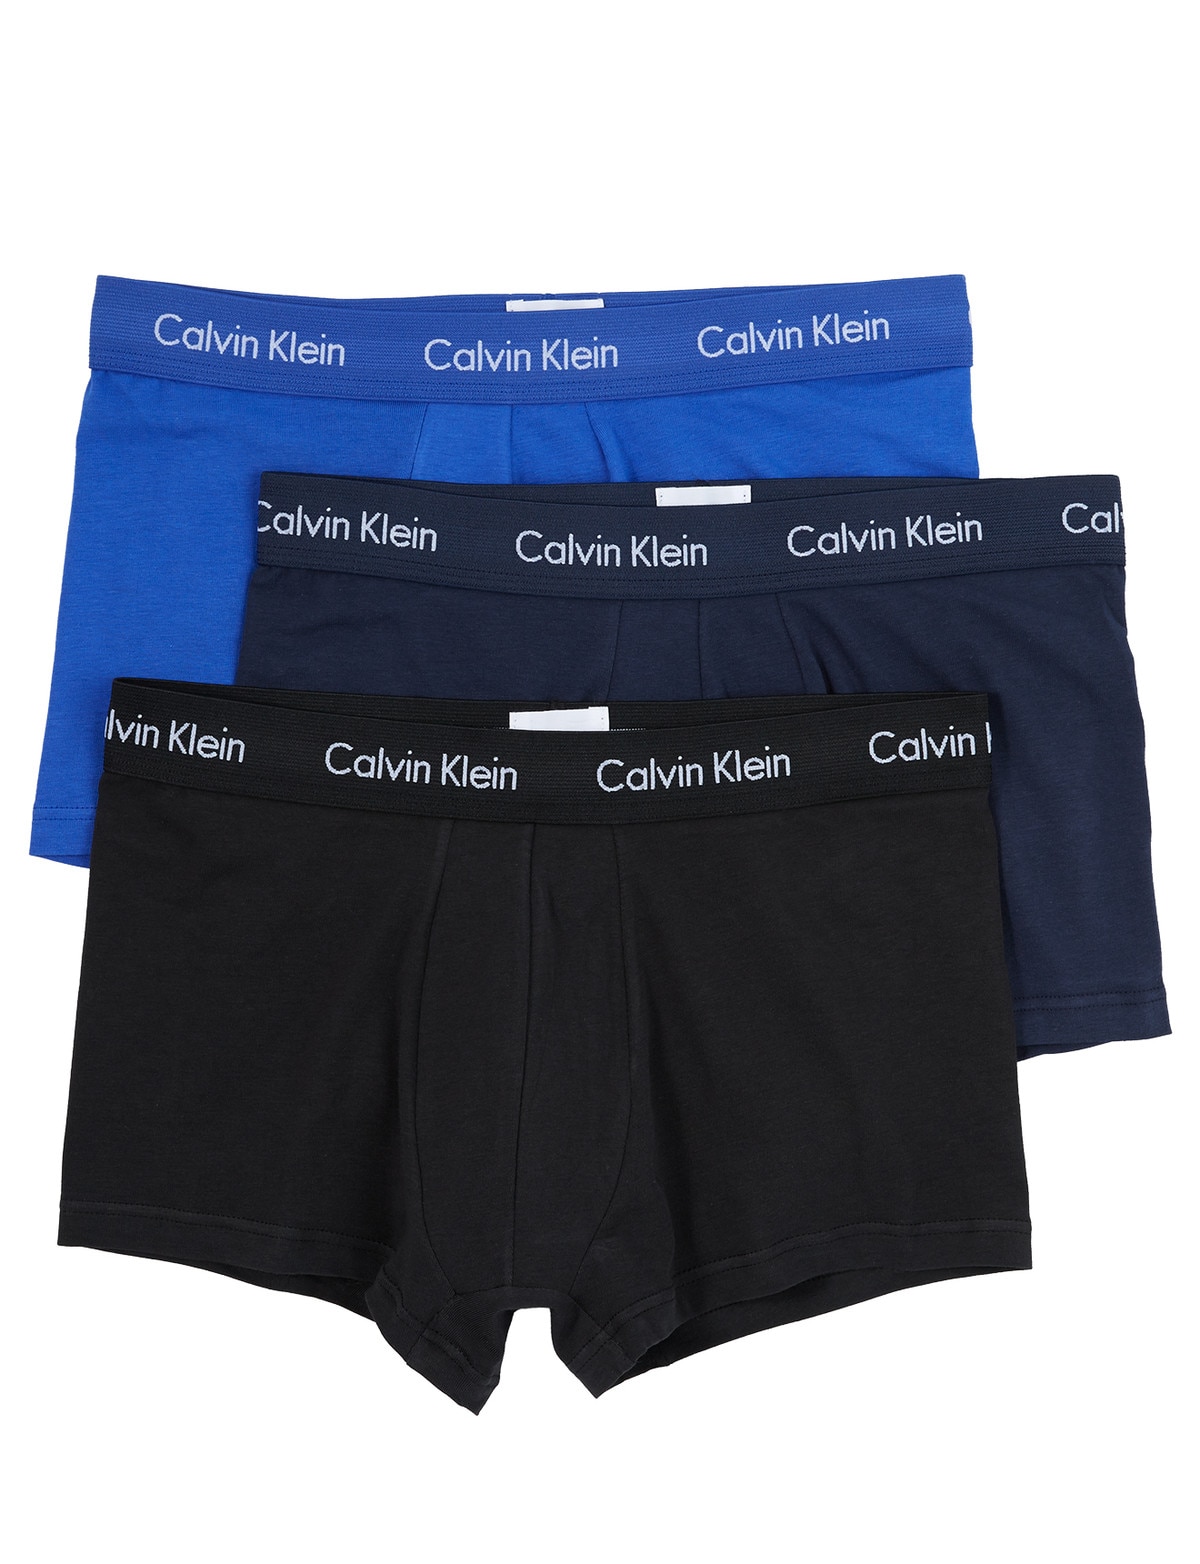 Calvin Klein Low Rise Trunk Cotton Stretch, Blue/Black, 3-Pack - Underwear